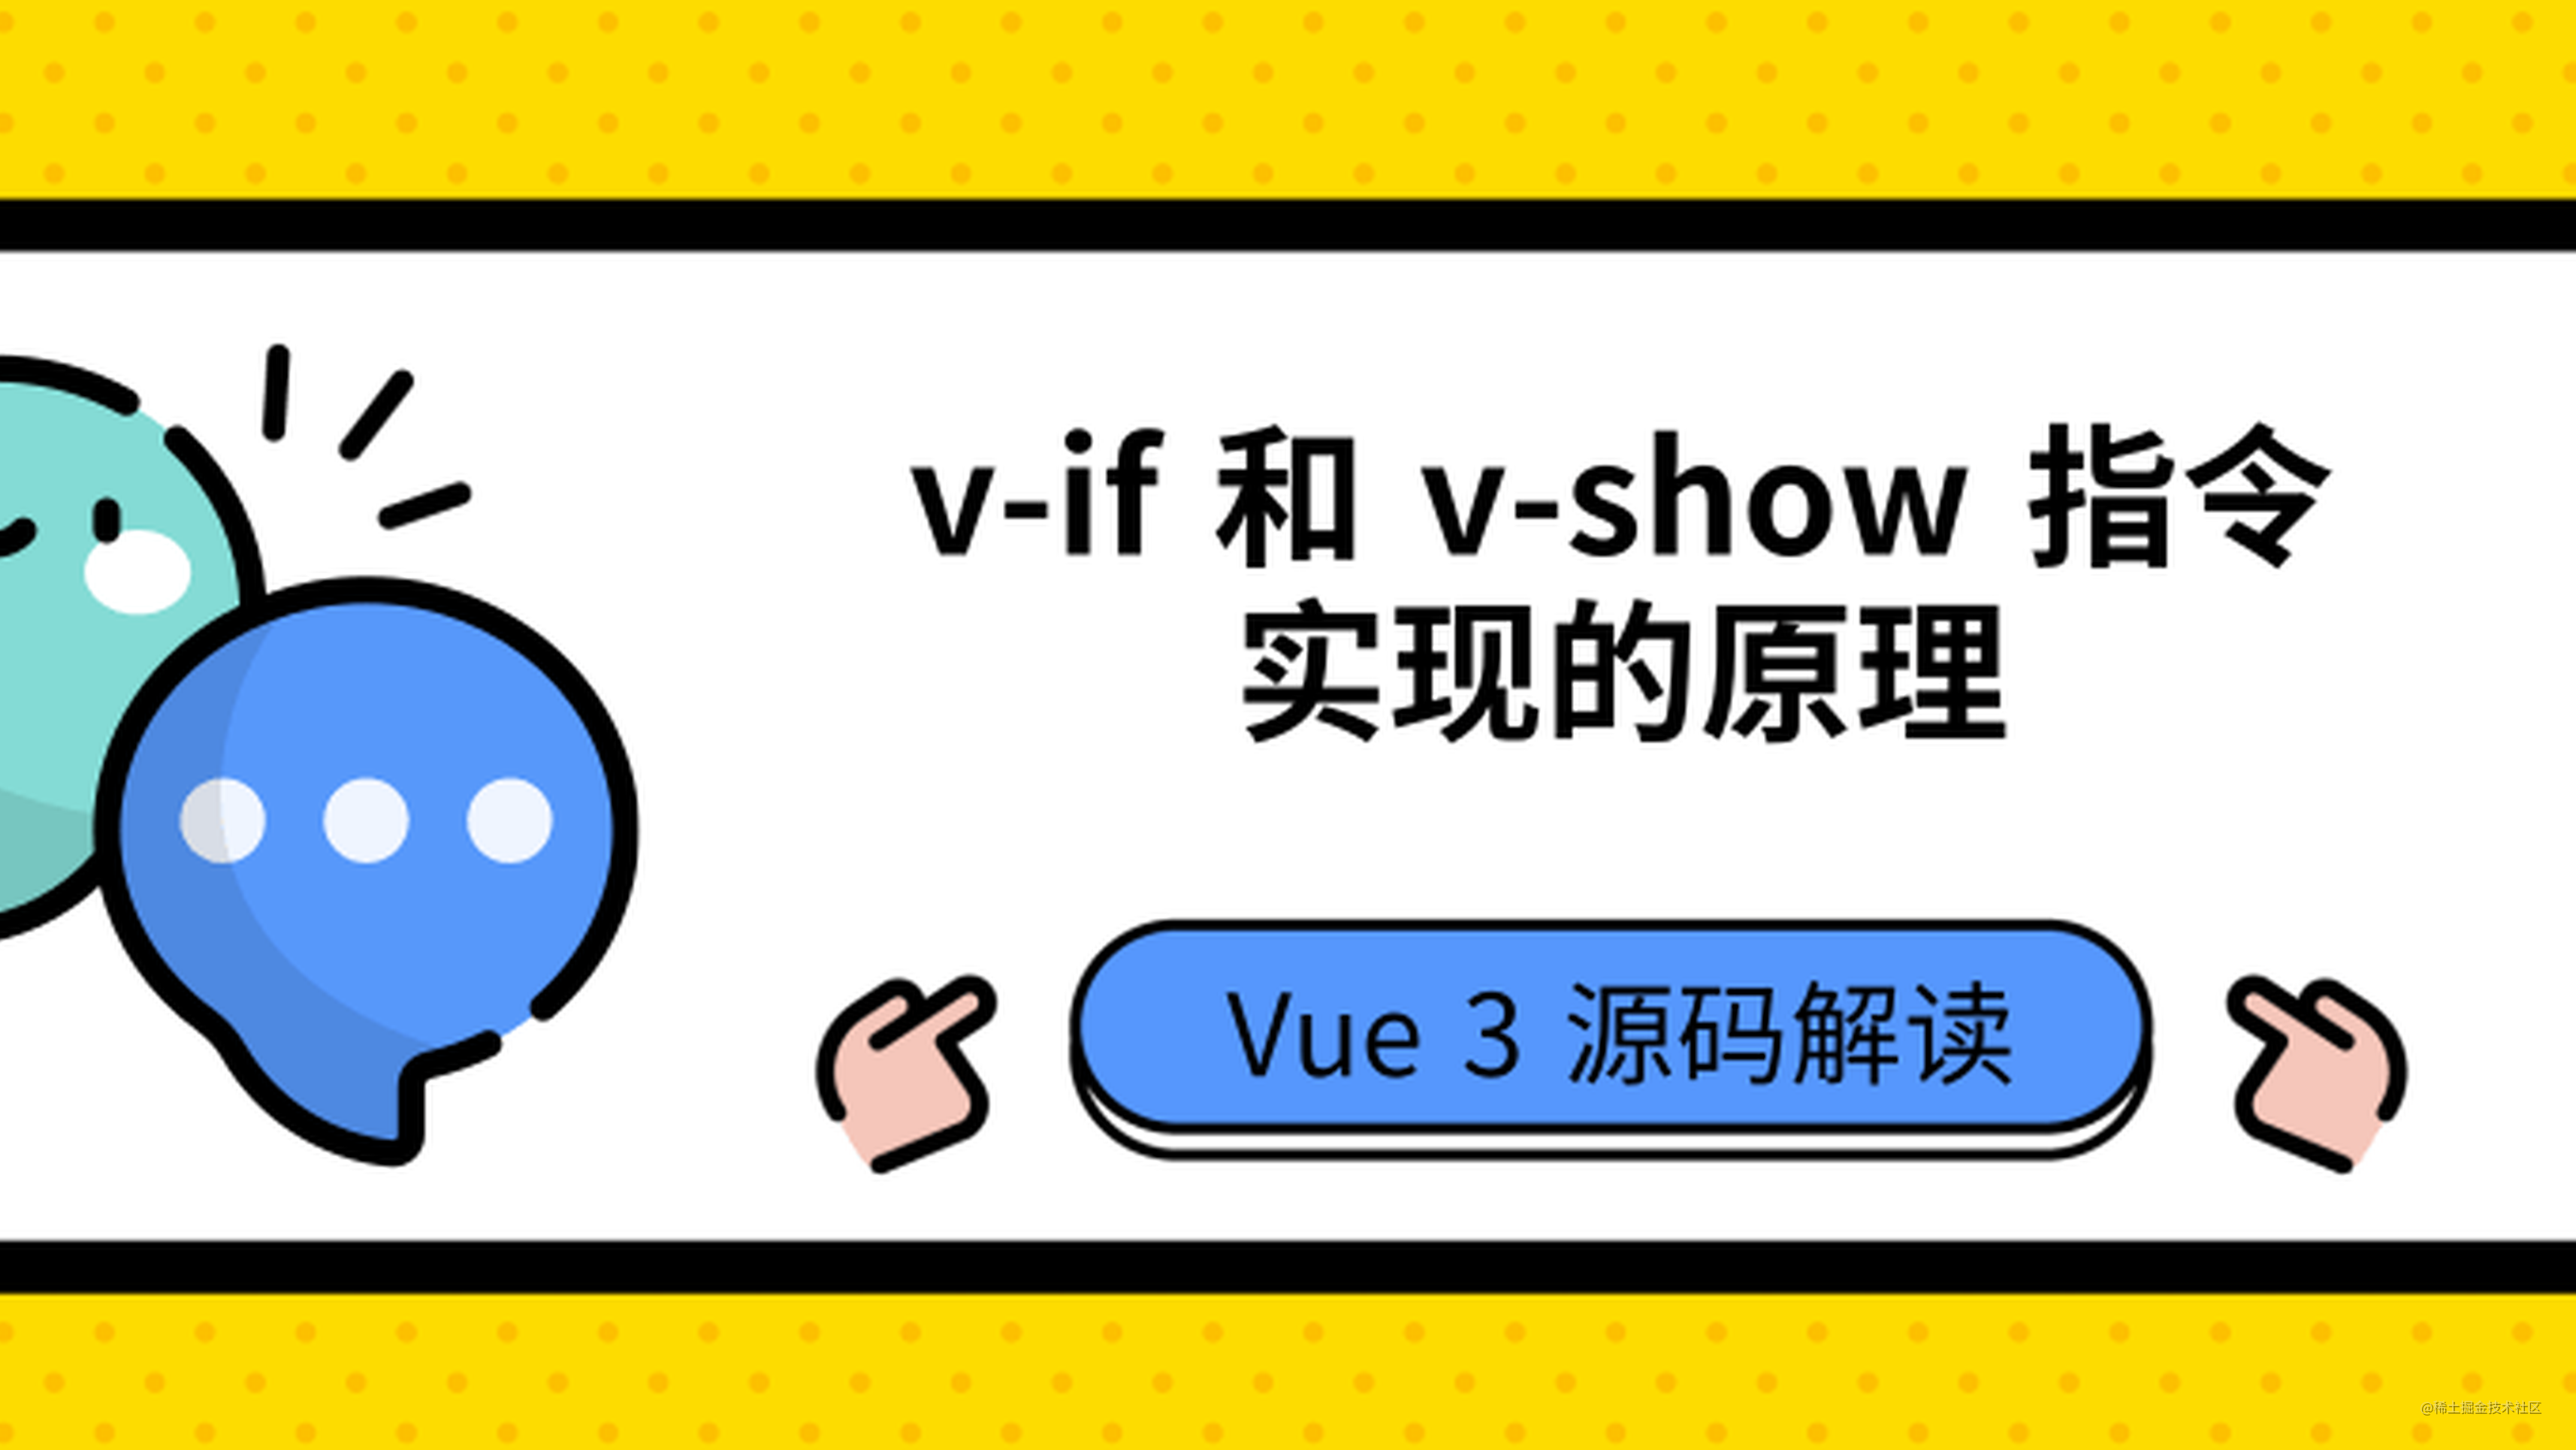  Vue3 中 v-if 和 v-show 指令实现的原理 | 源码解读